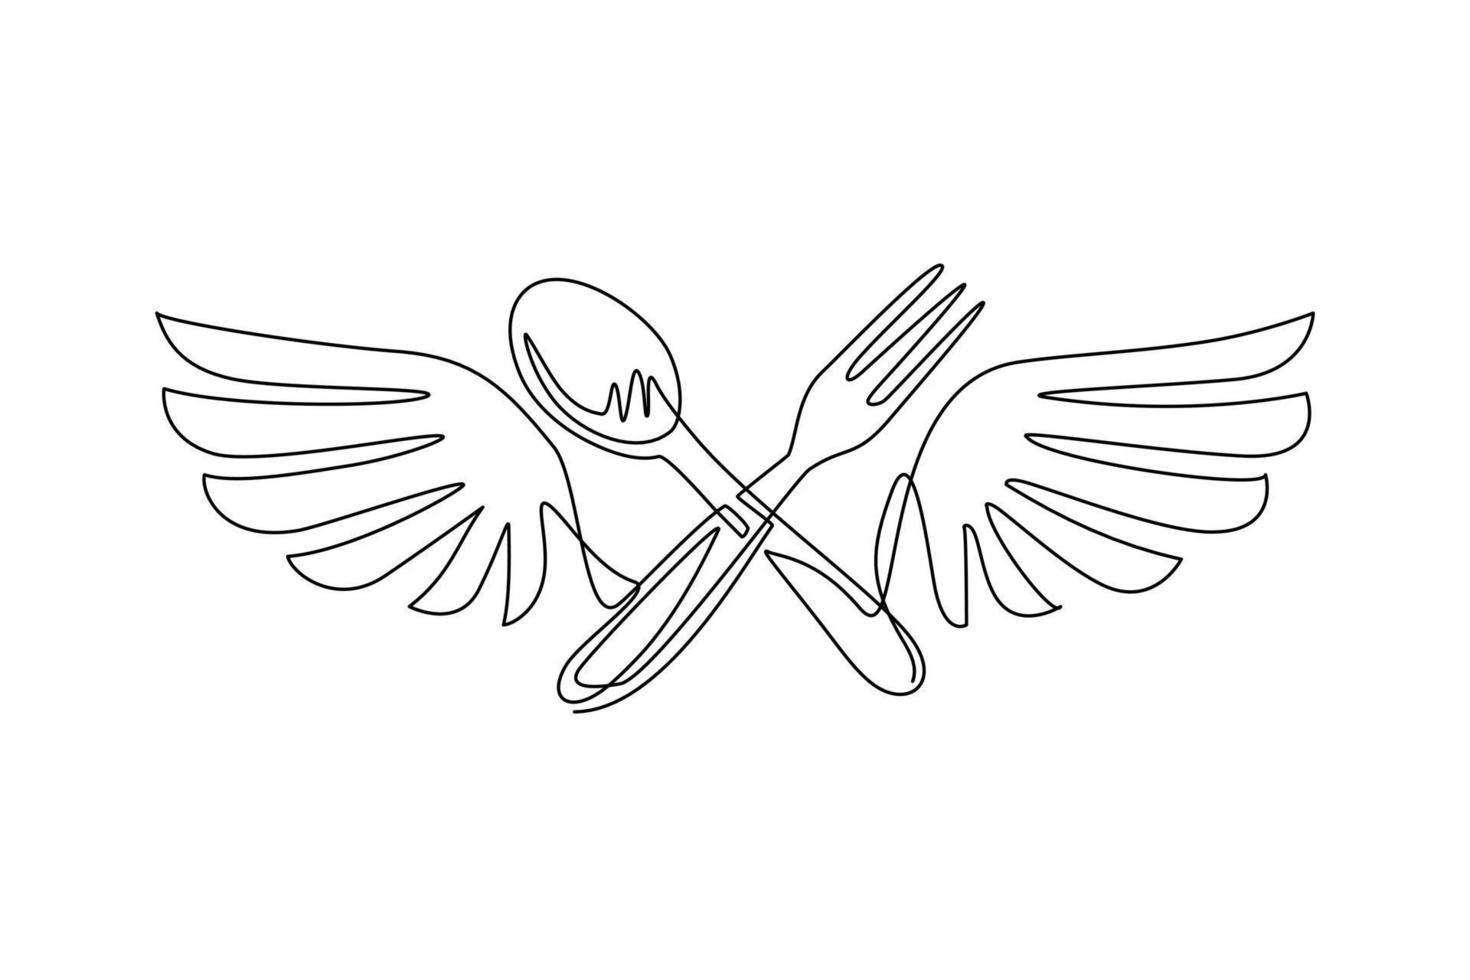 Cuchara de tenedor de dibujo de una sola línea con icono del logotipo de alas. entrega de comida deliciosa, negocio de catering, símbolo de área de comida rápida plano aislado. ilustración de vector gráfico de diseño de dibujo de línea continua moderna